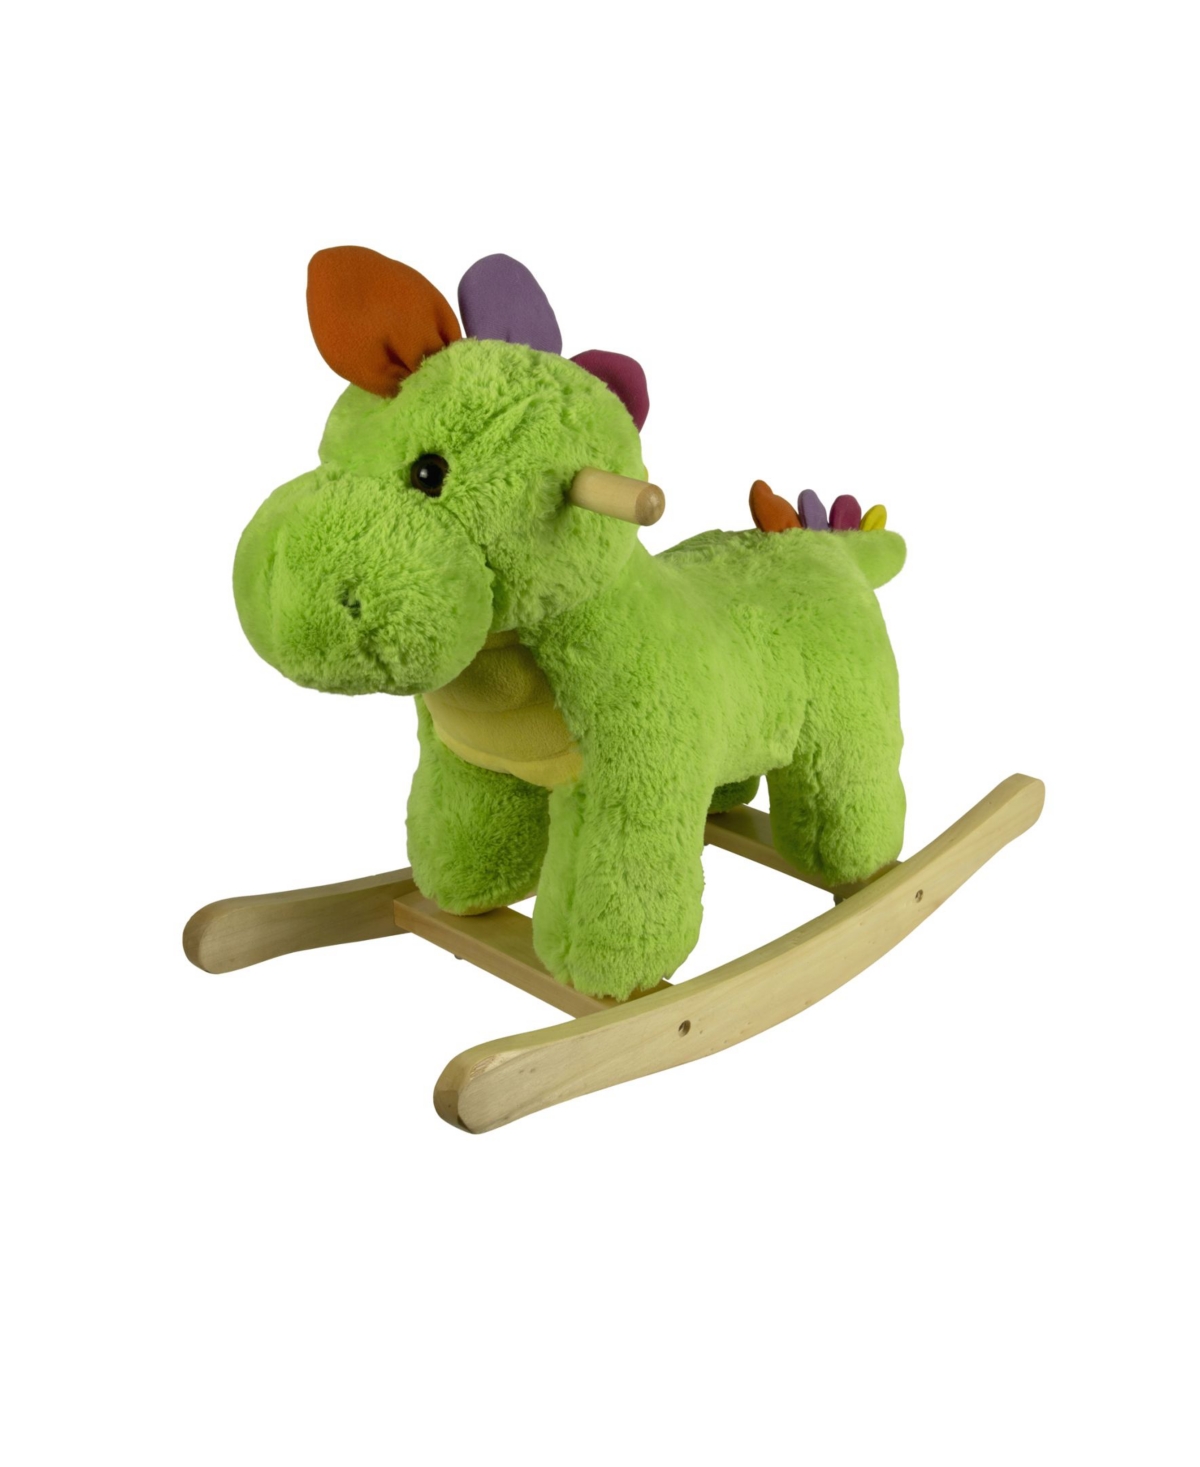 Ponyland Babies' 24" Plush Rocking Dinosaur In Green